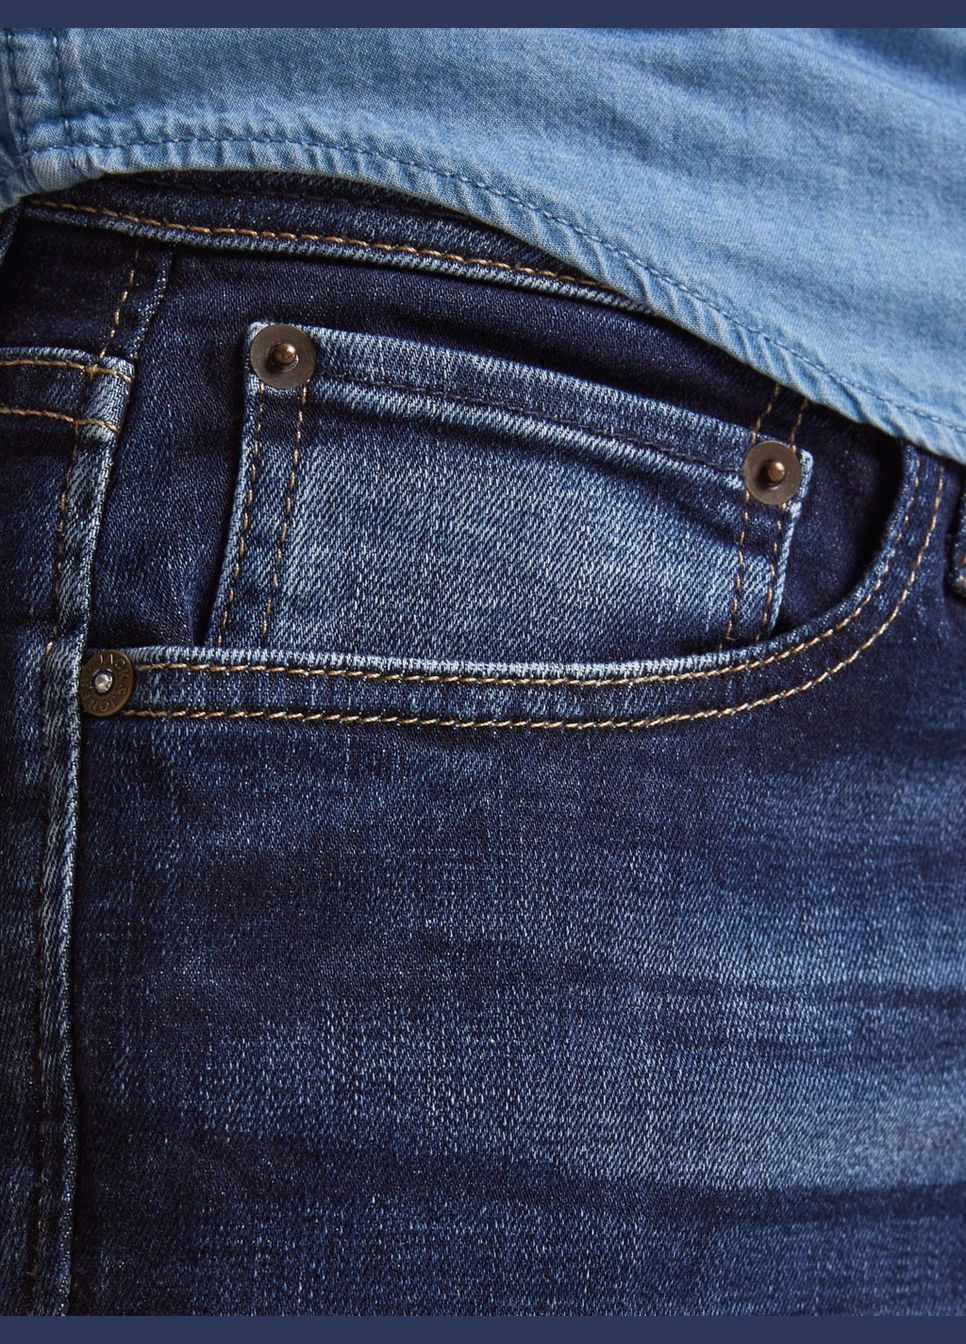 Темно-синие демисезонные джинсы Clark Original JOS 278 Regular fit 12177444 JACK&JONES